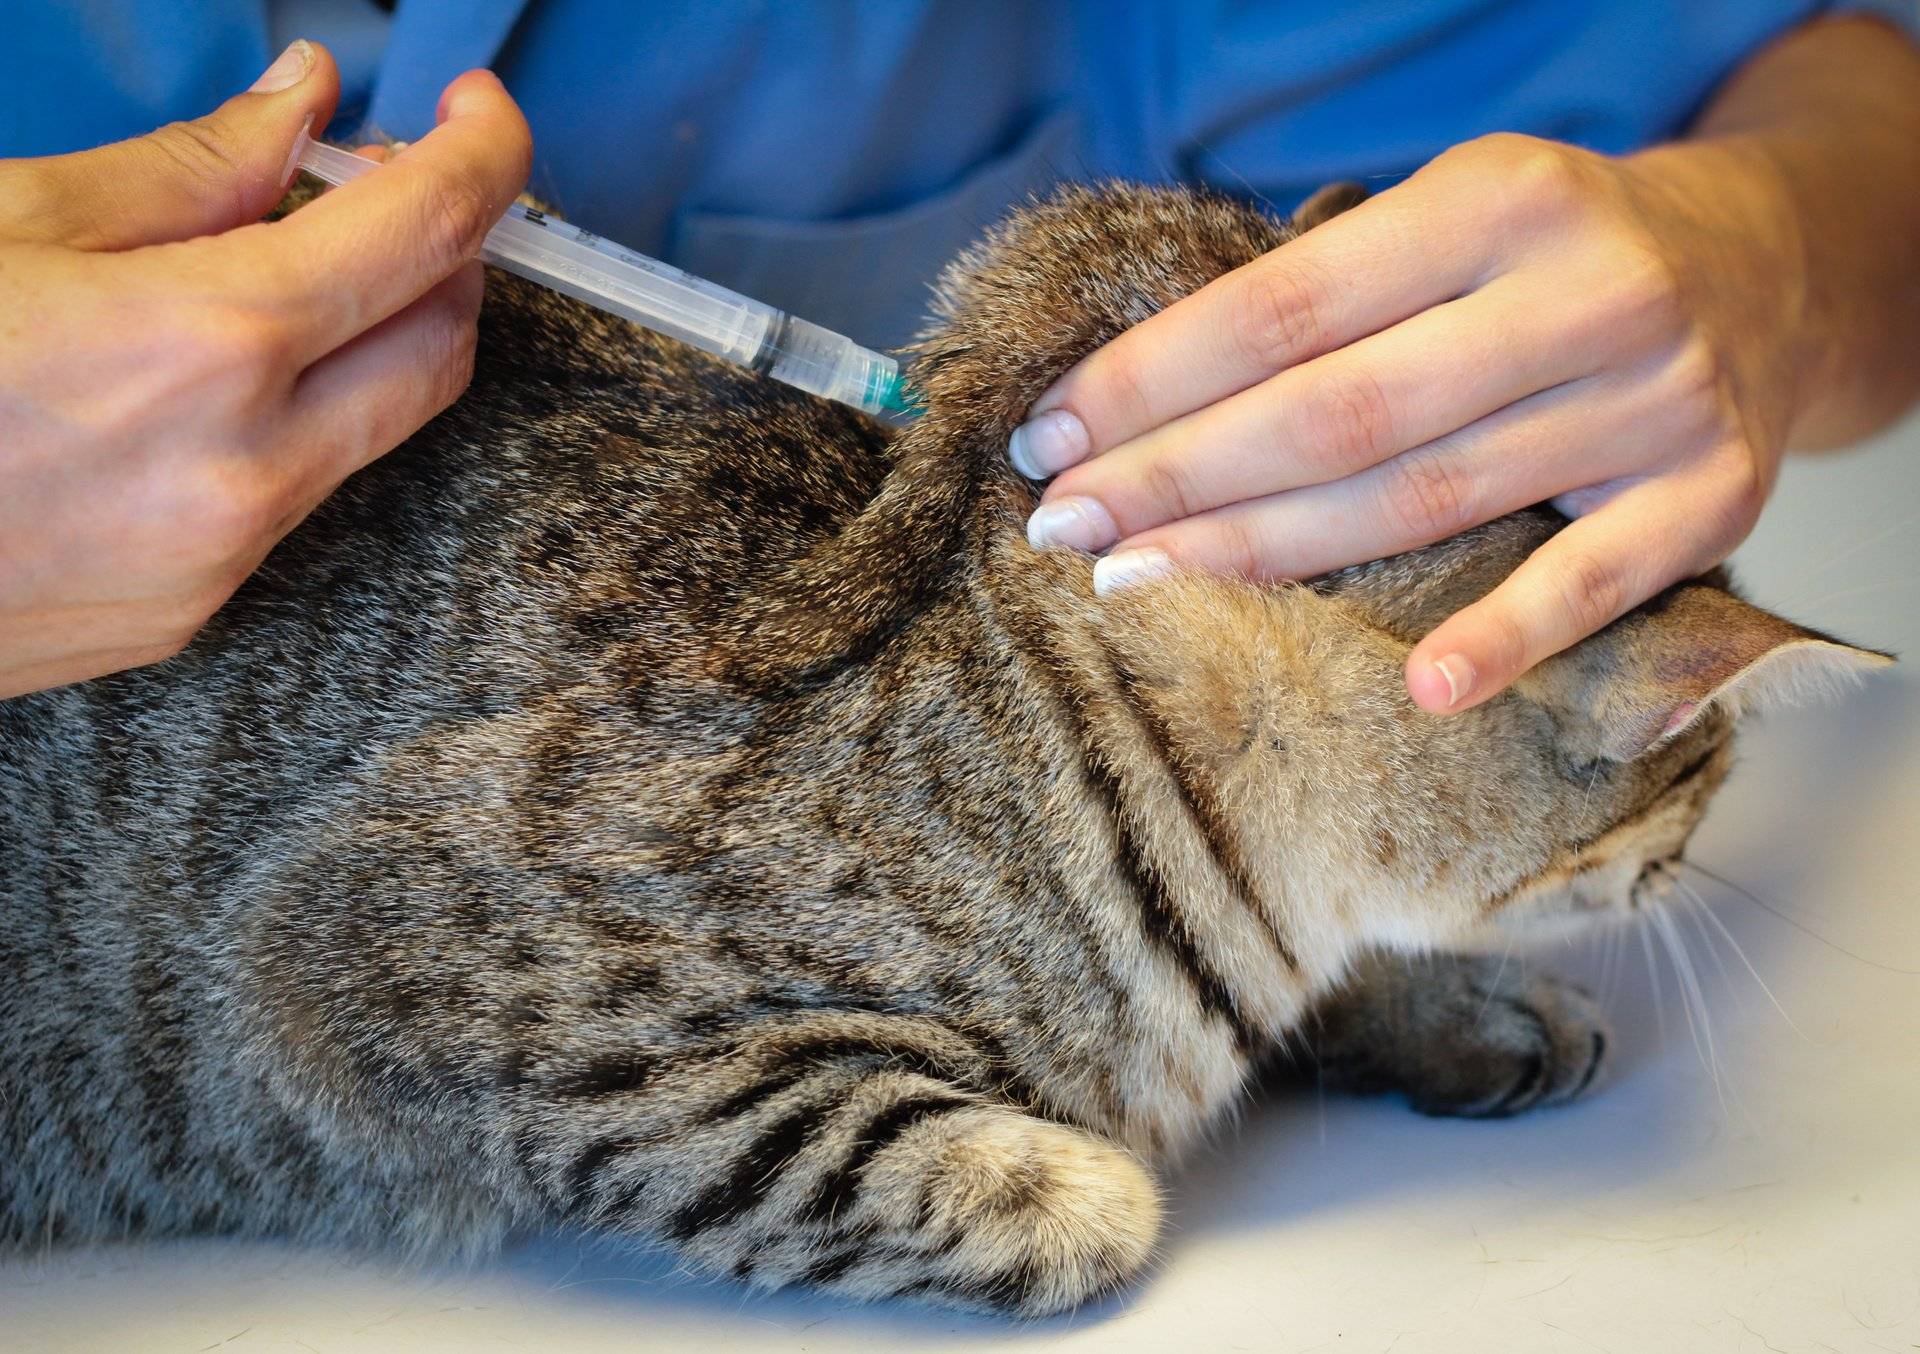 Лямблиоз у кошек | симптомы и лечение лямблиоза у кошек | компетентно о здоровье на ilive